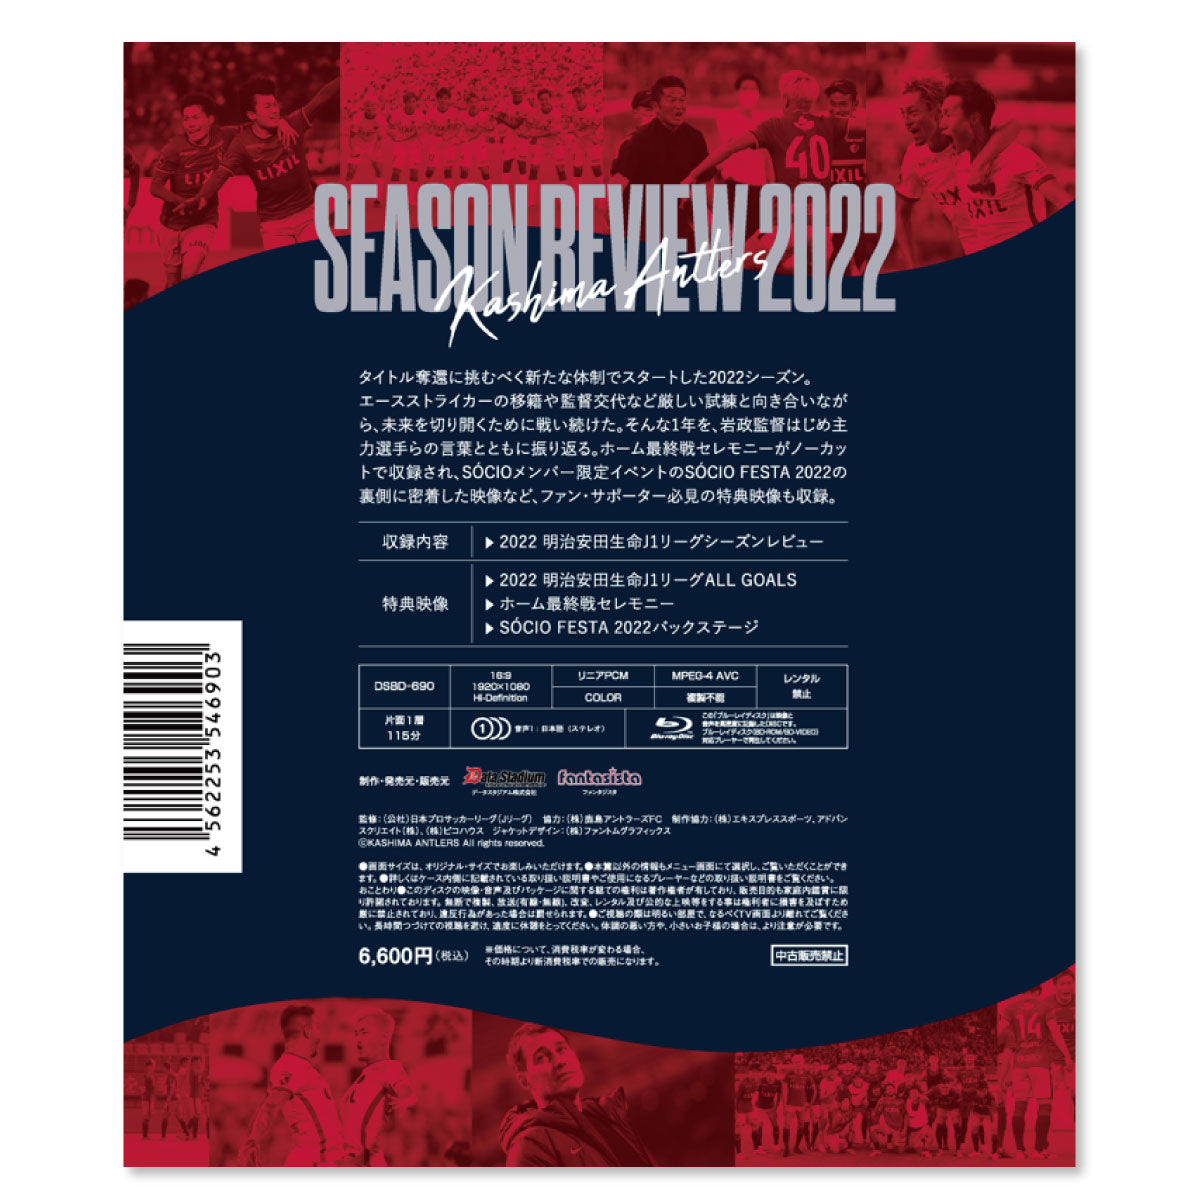 2022シーズンレビュー【通常版】Blu-ray